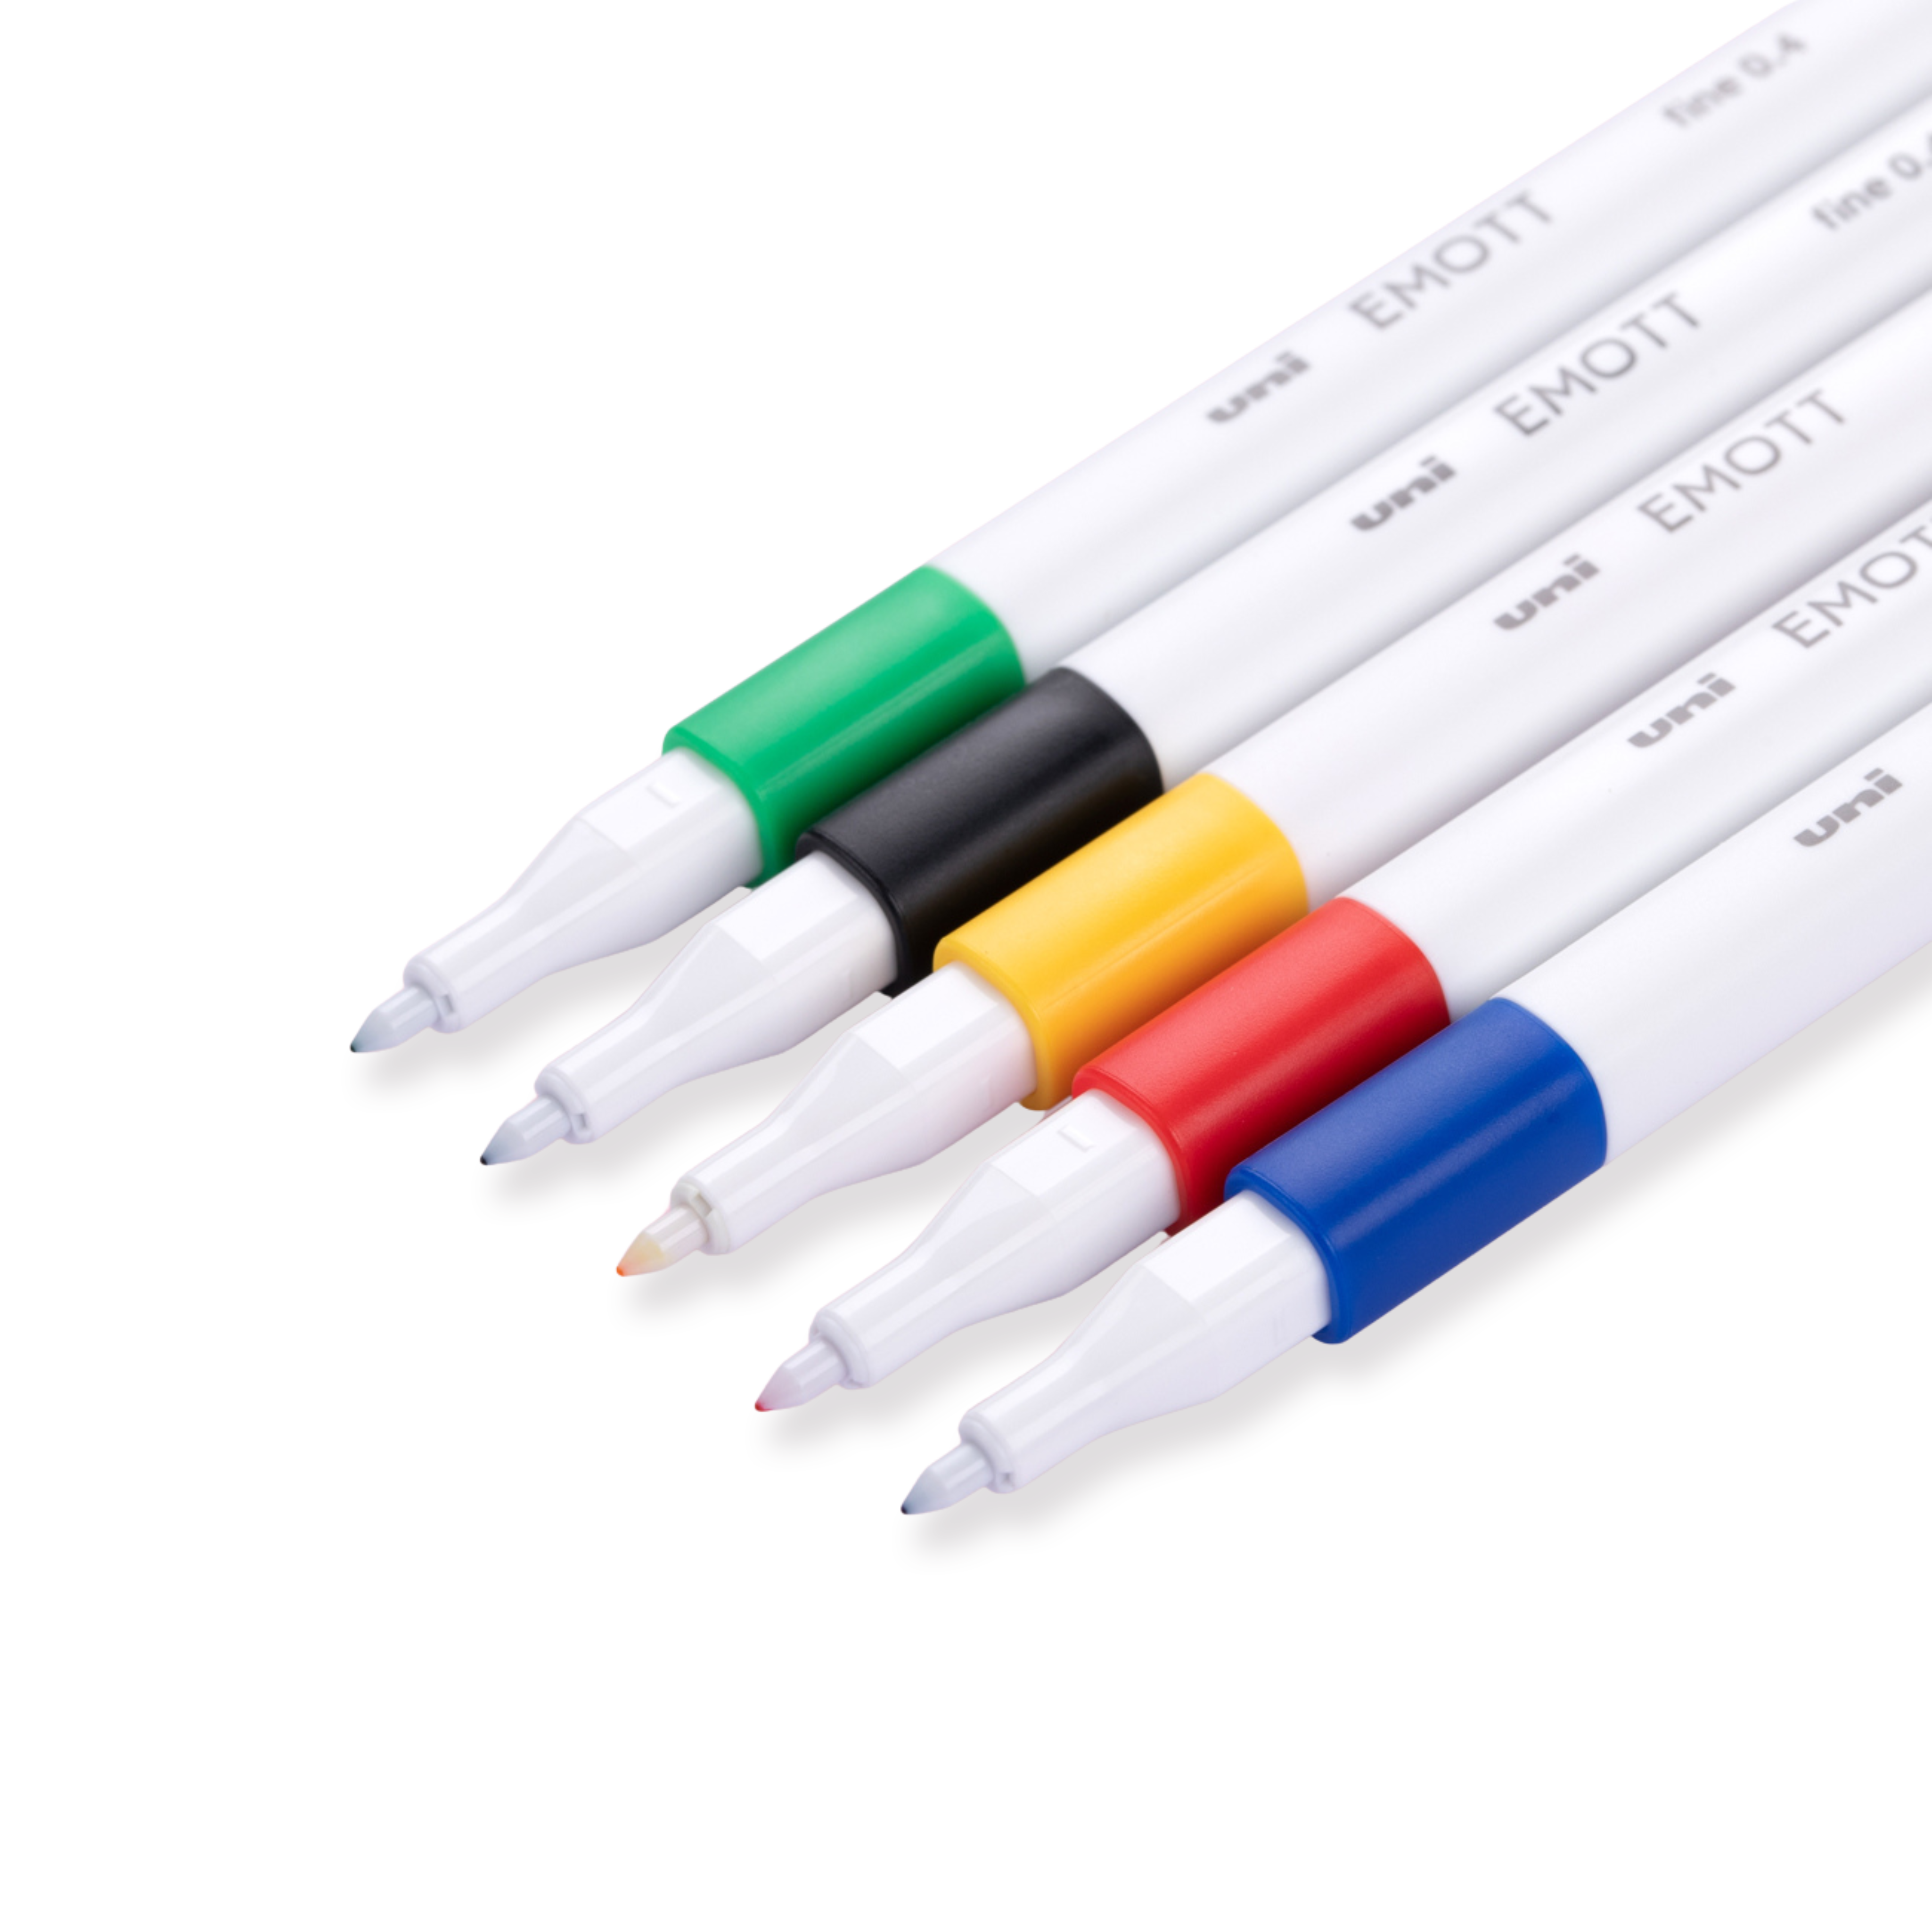 Uni Emott Ever Fine Rotulador para marcar - 0,4 mm - Juego de 5 colores - N.º 1 colores vivos